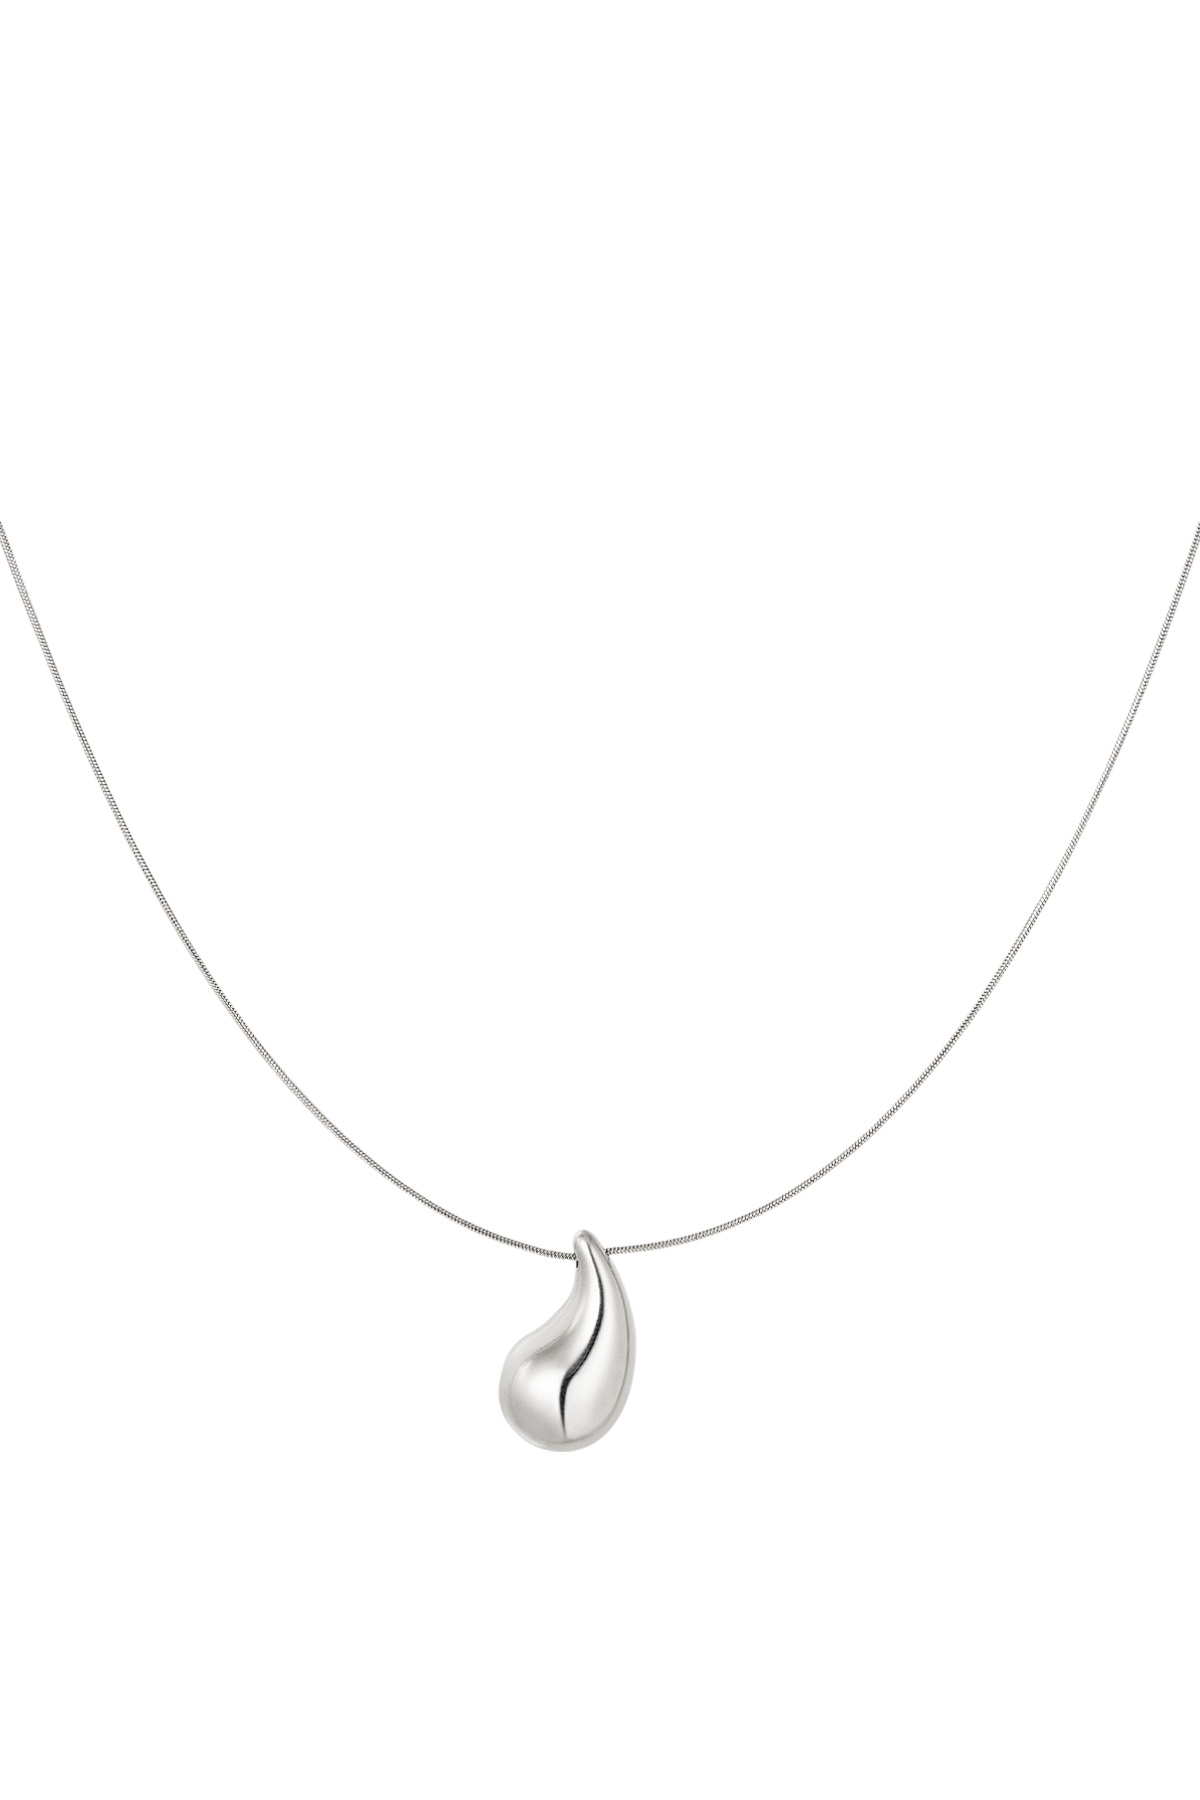 Drop necklace - silver h5 